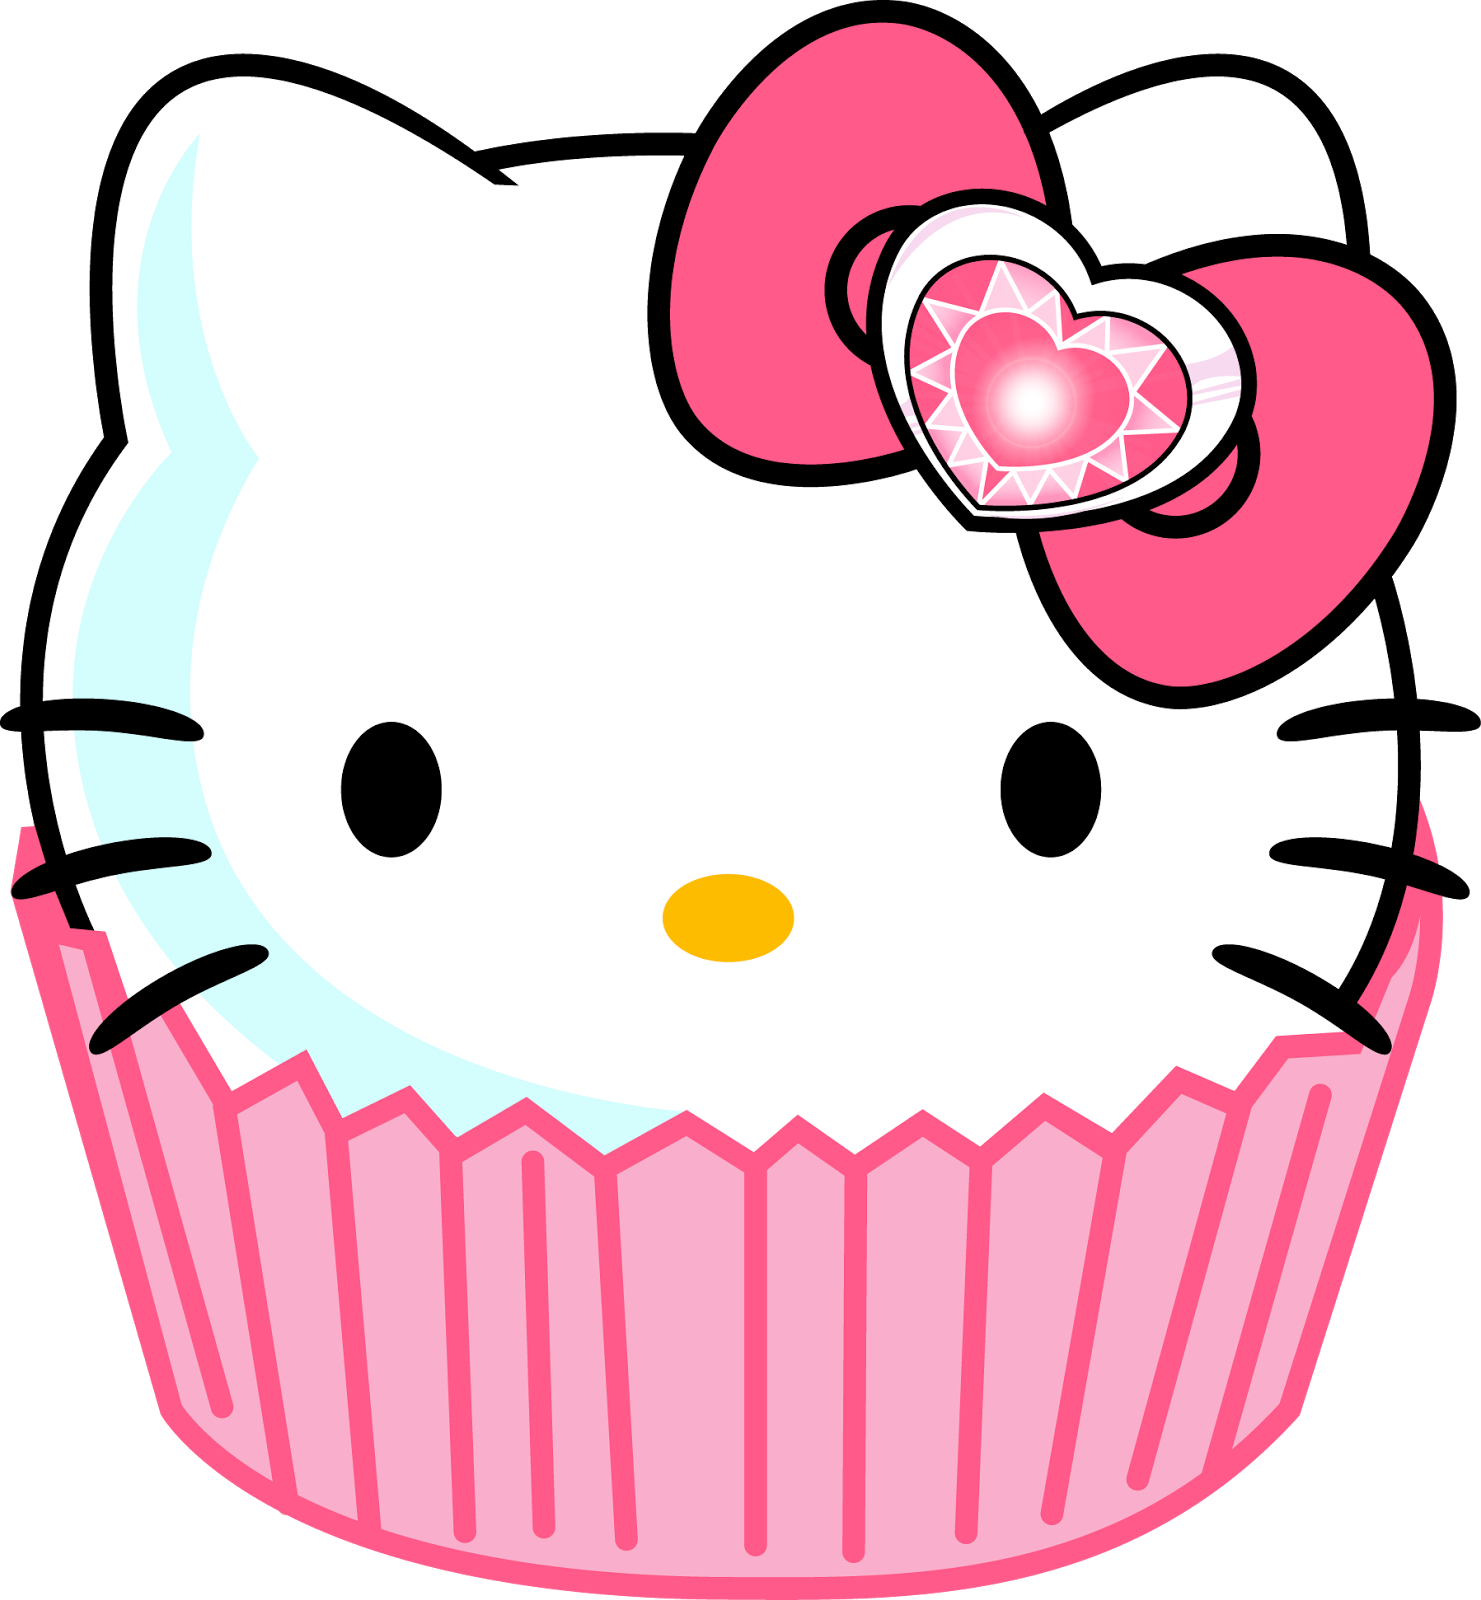  naver. Cupcakes clipart cupcake hello kitty